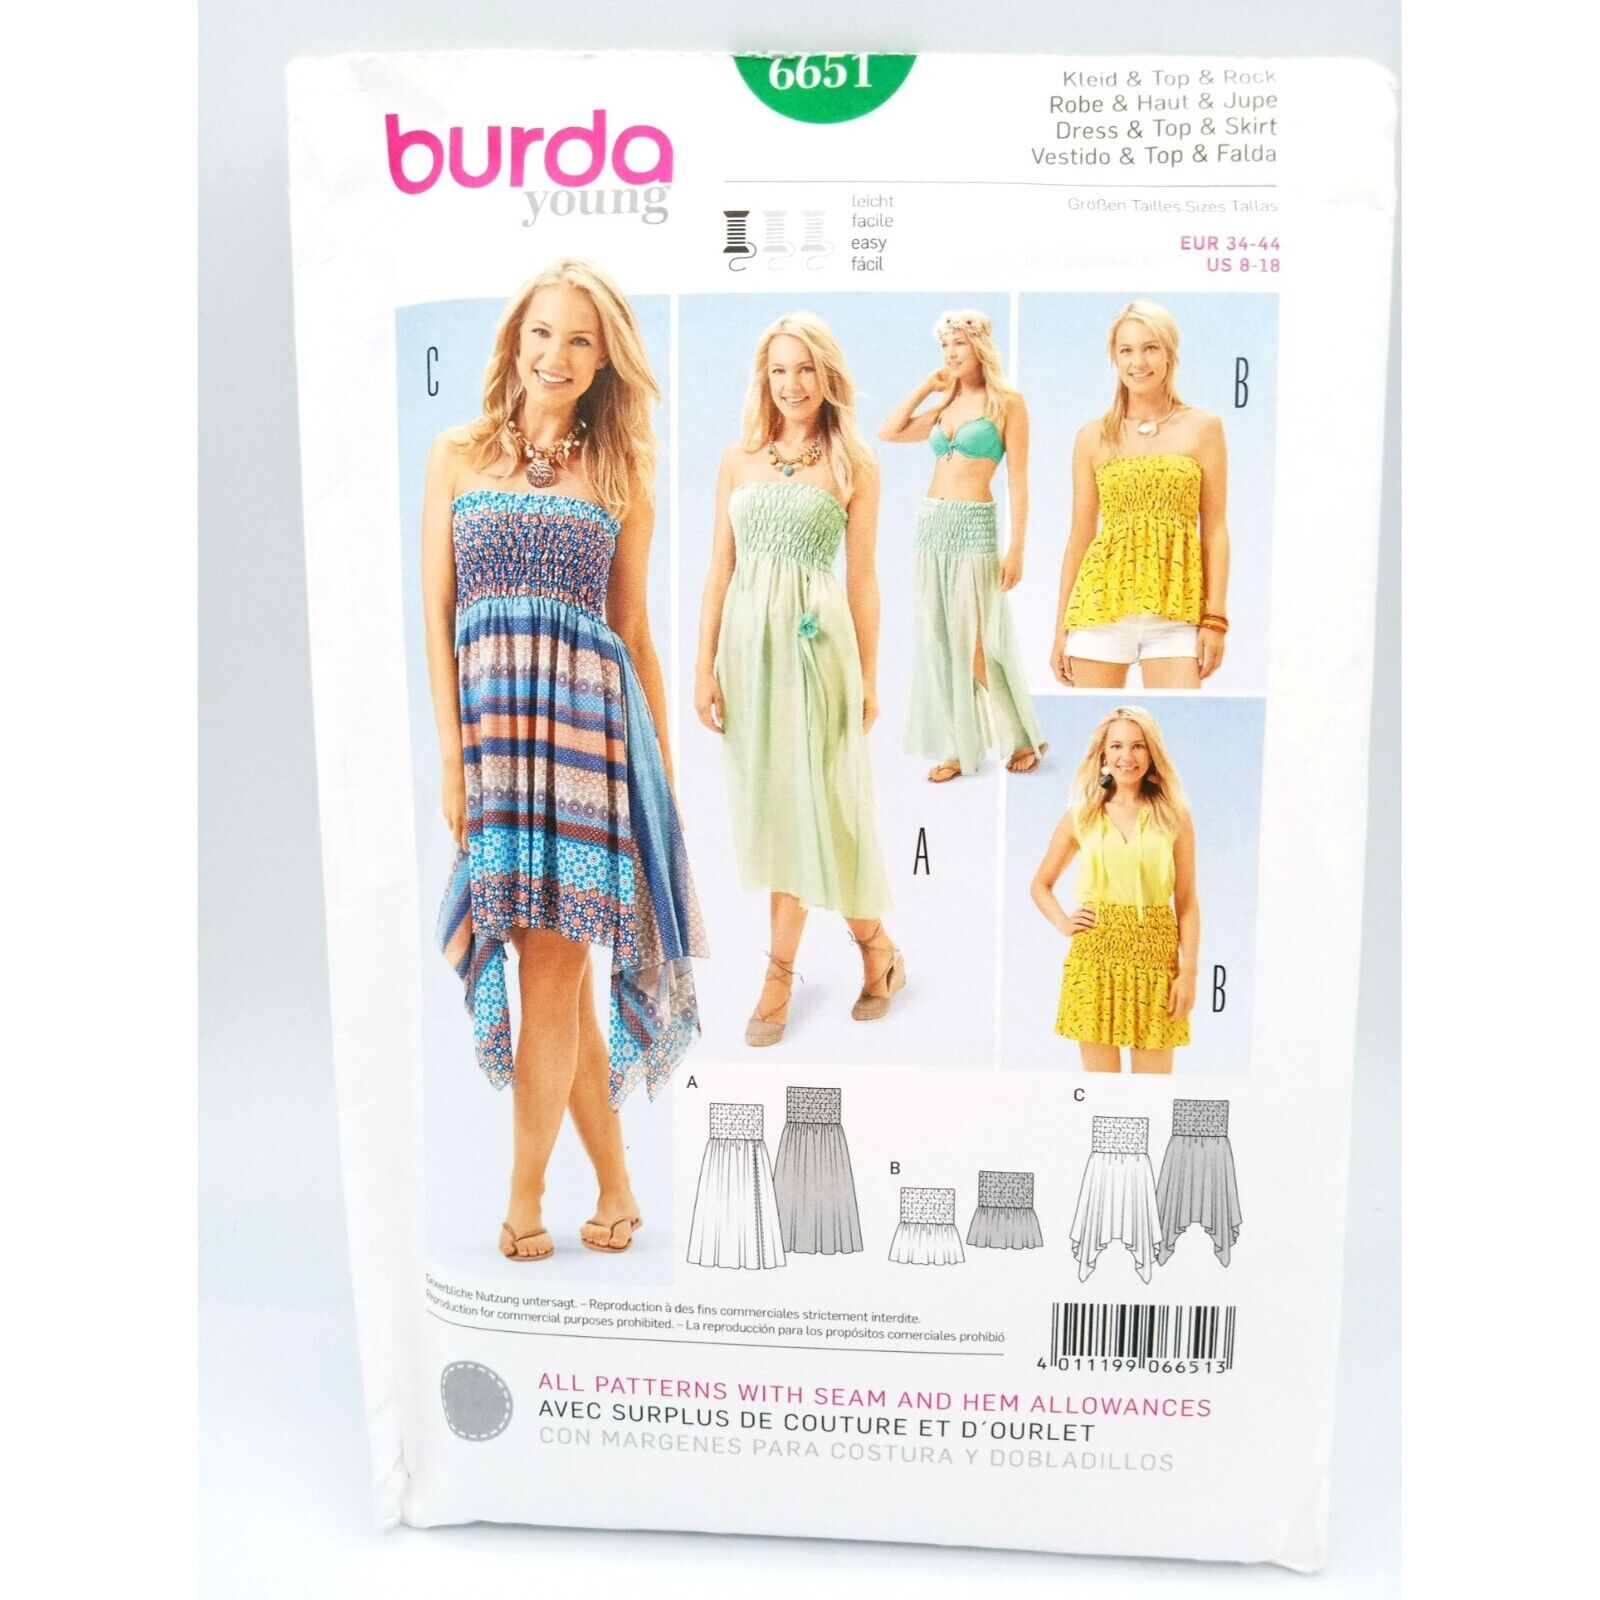 Burda Young Pattern 6651 Dress Top Skirt Seam Hem Allowances US 8-18 EUR 34-44